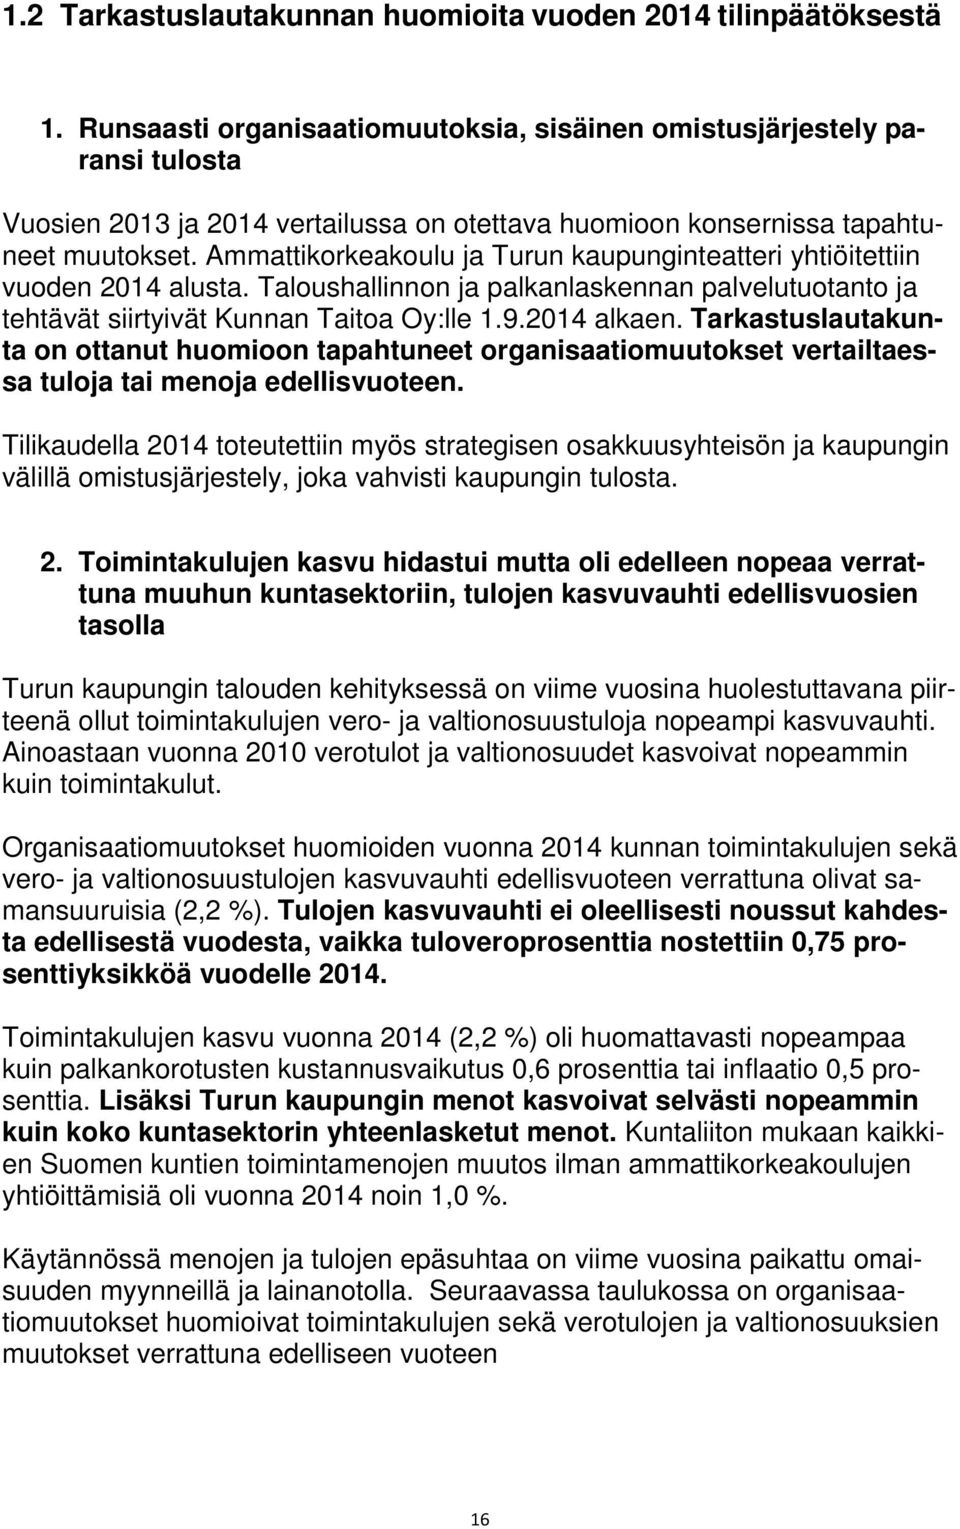 Ammattikorkeakoulu ja Turun kaupunginteatteri yhtiöitettiin vuoden 2014 alusta. Taloushallinnon ja palkanlaskennan palvelutuotanto ja tehtävät siirtyivät Kunnan Taitoa Oy:lle 1.9.2014 alkaen.